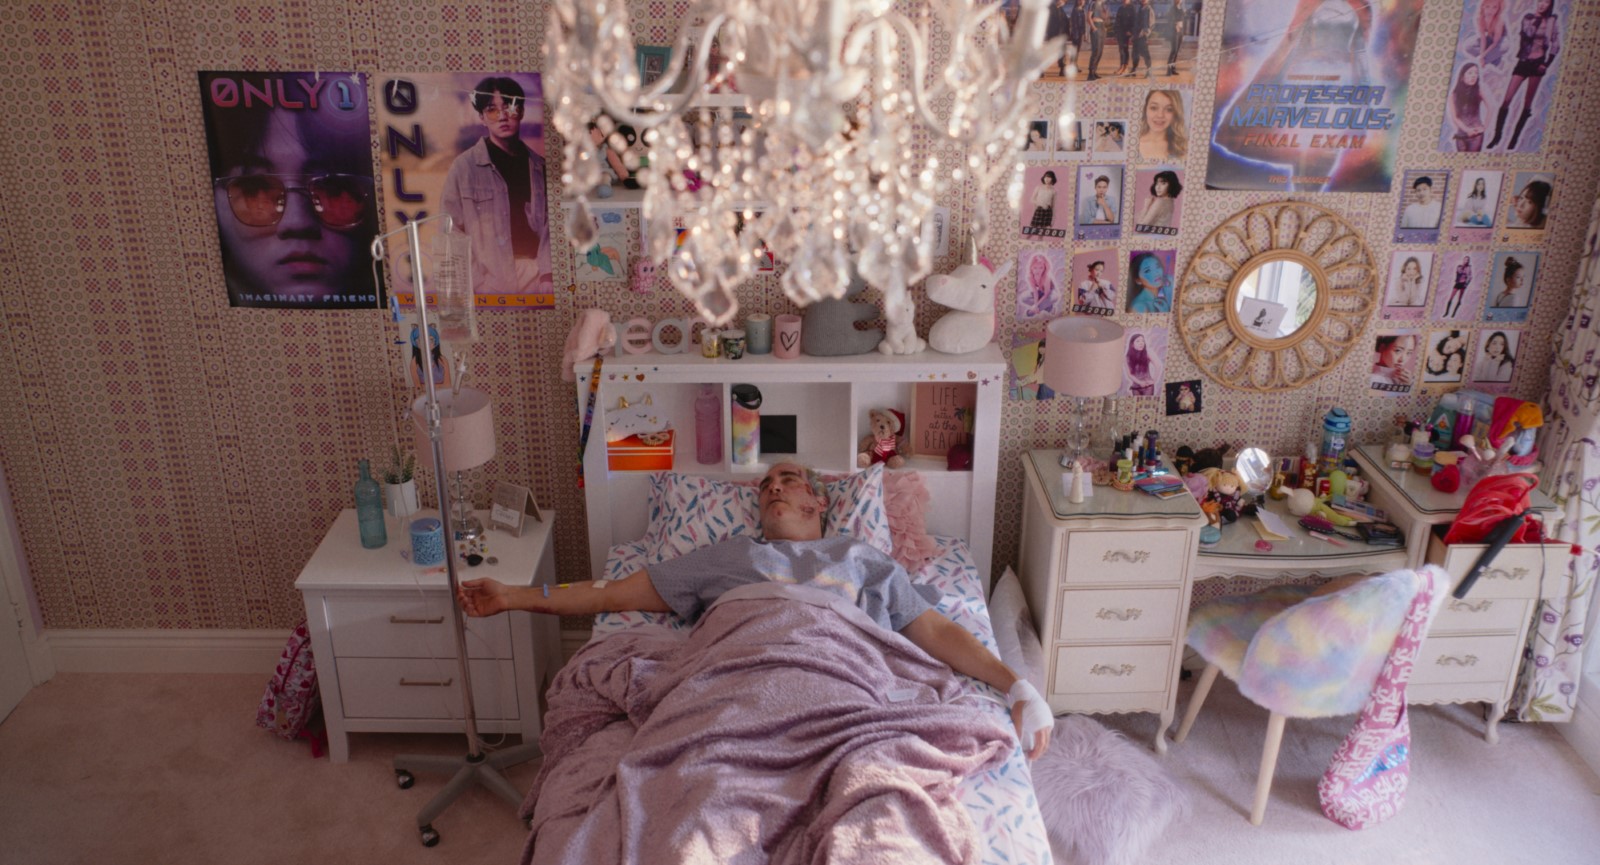 Beau couché en tenue d'hôpital et branché à une perfusion dans le lit d'une chambre adolescente tout en rose avec des posters de k-pop